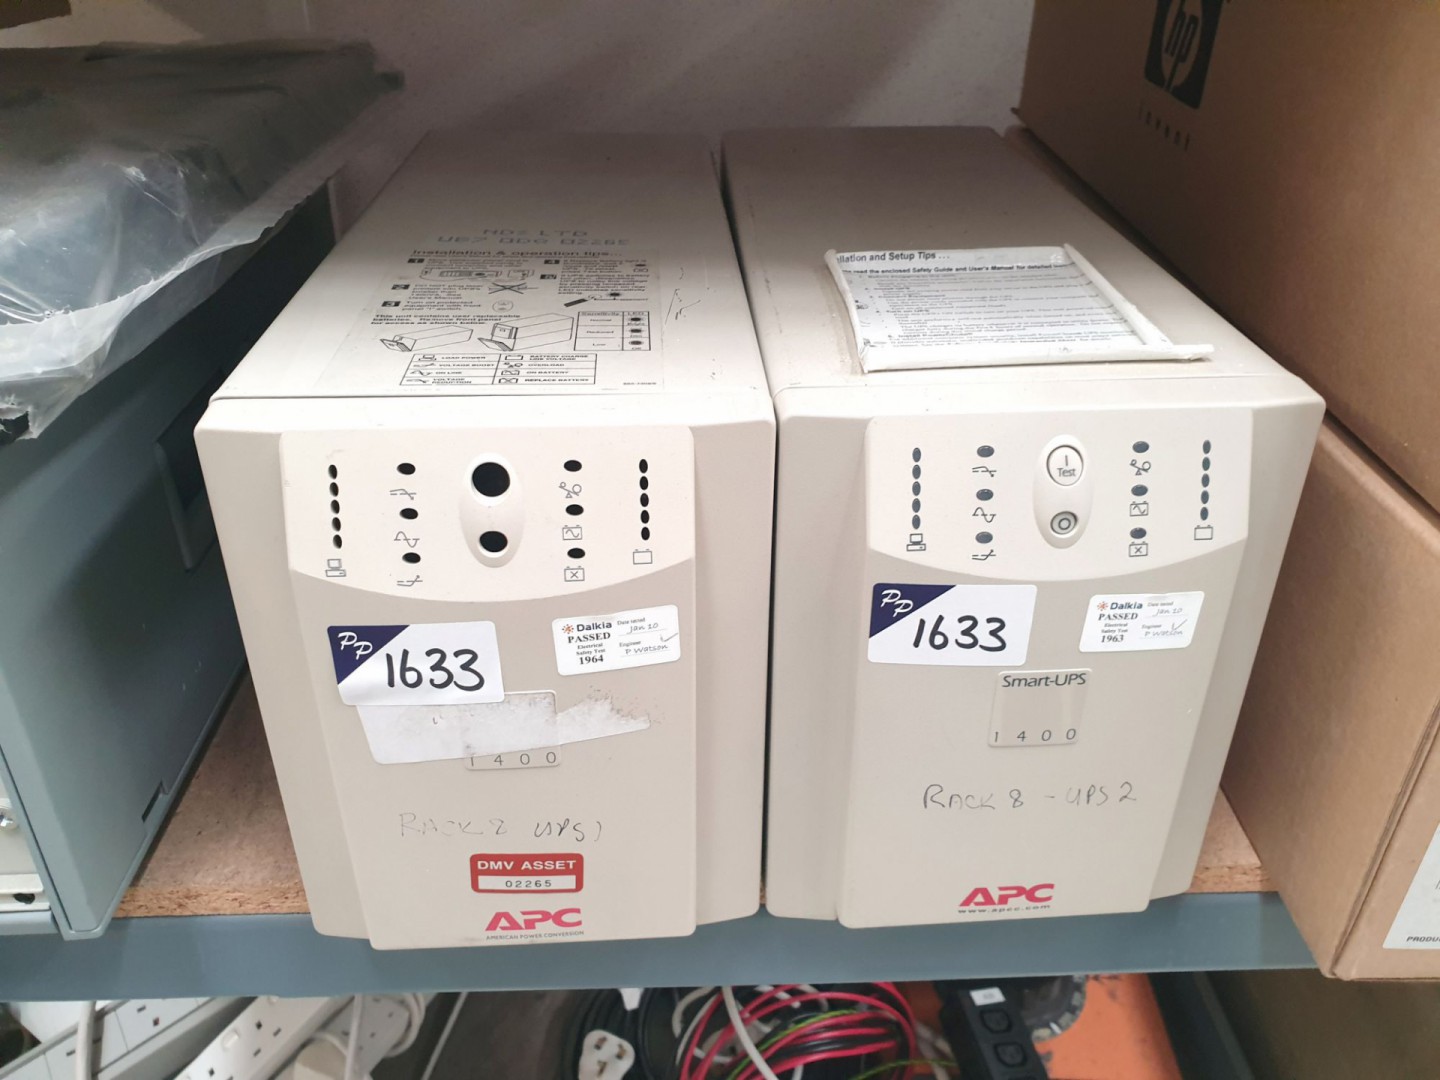 2x APC 1400 smart UPS